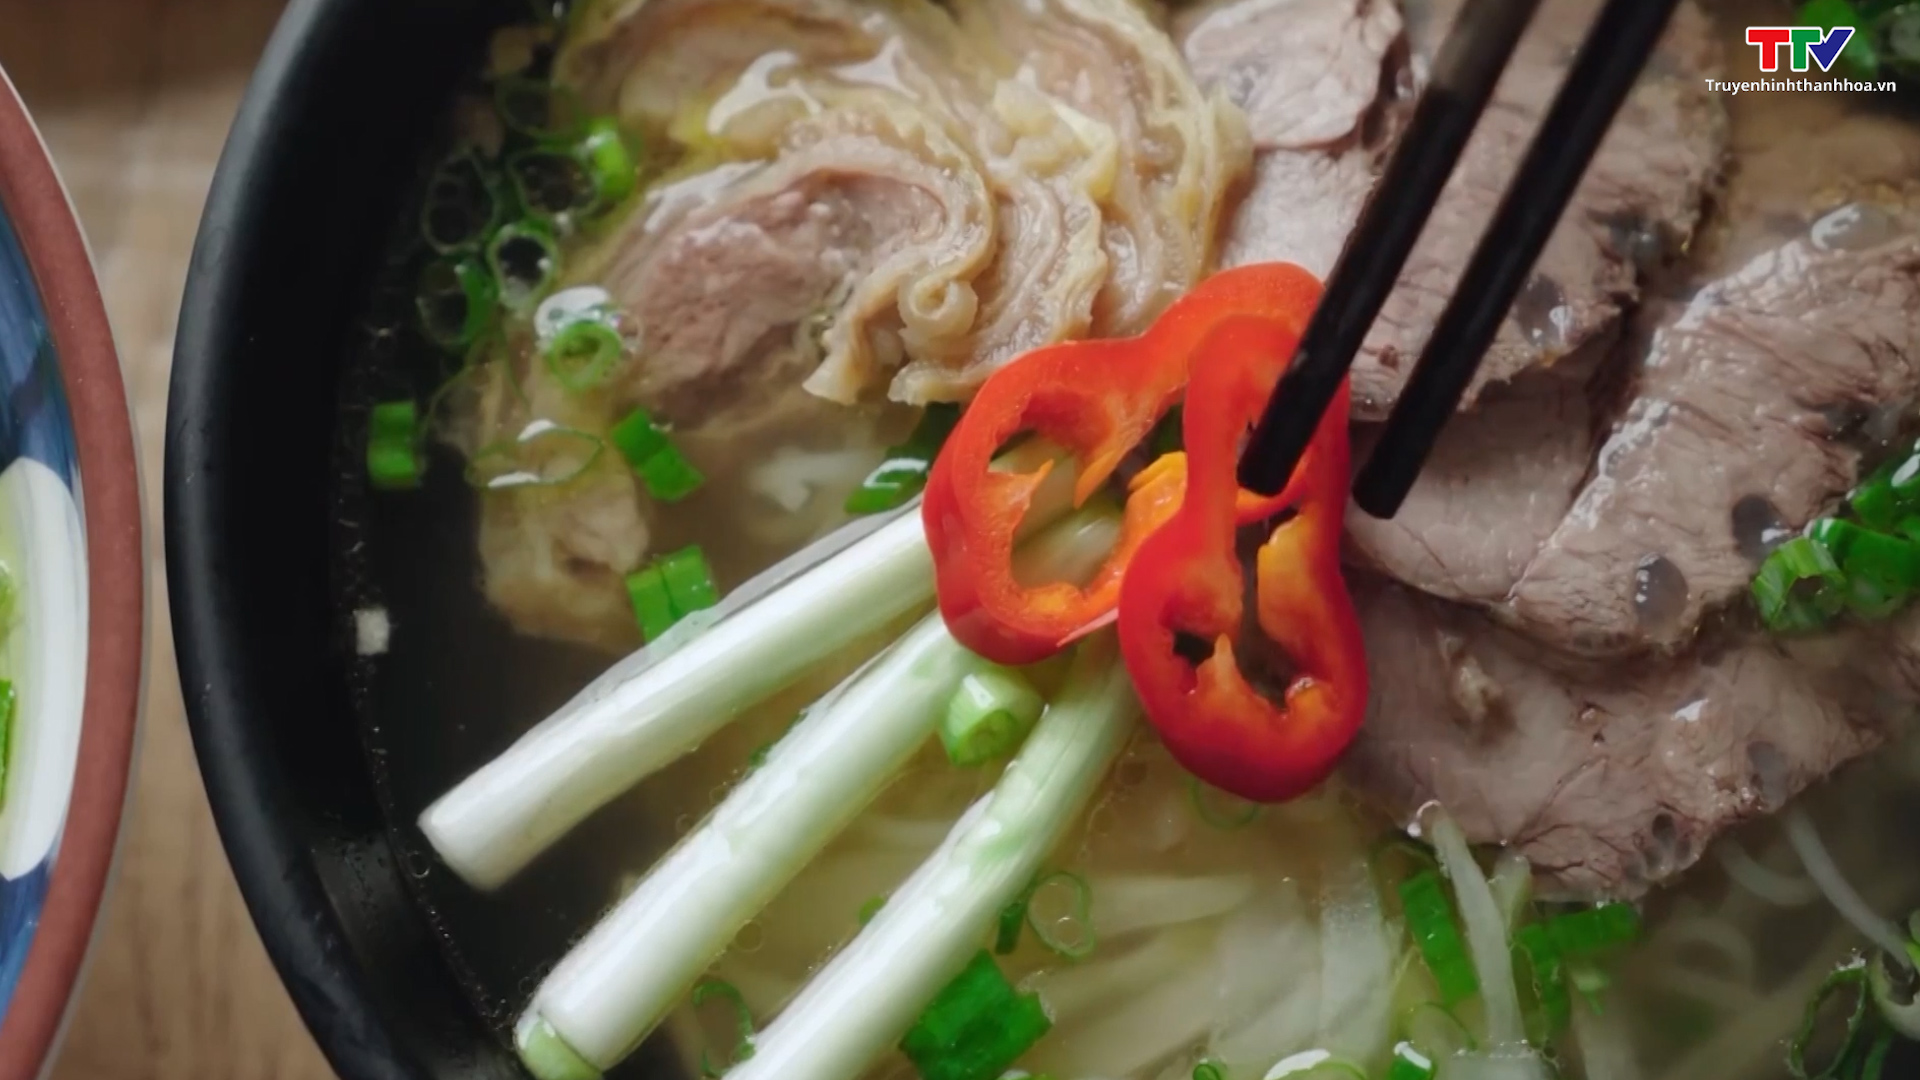 Việt Nam đứng thứ 6 trên bảng xếp hạng các nền ẩm thực ngon nhất châu Á - Ảnh 2.